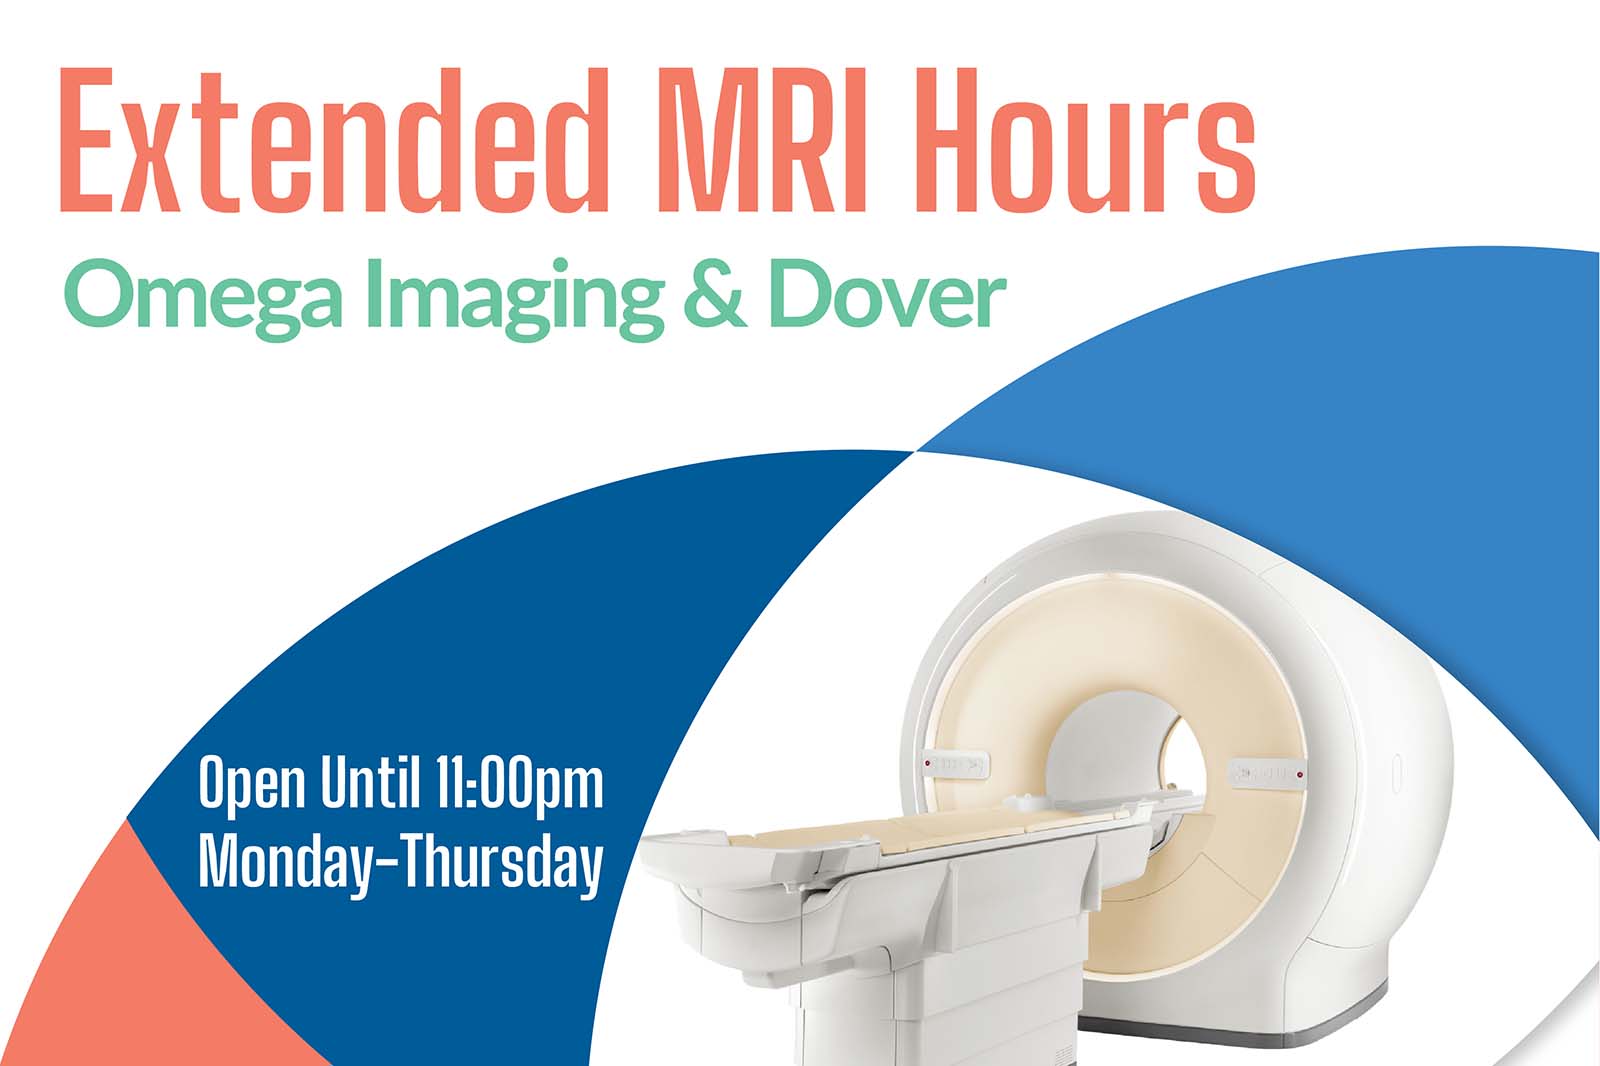 Delaware Extended MRI Hours, Dover & Omega Imaging